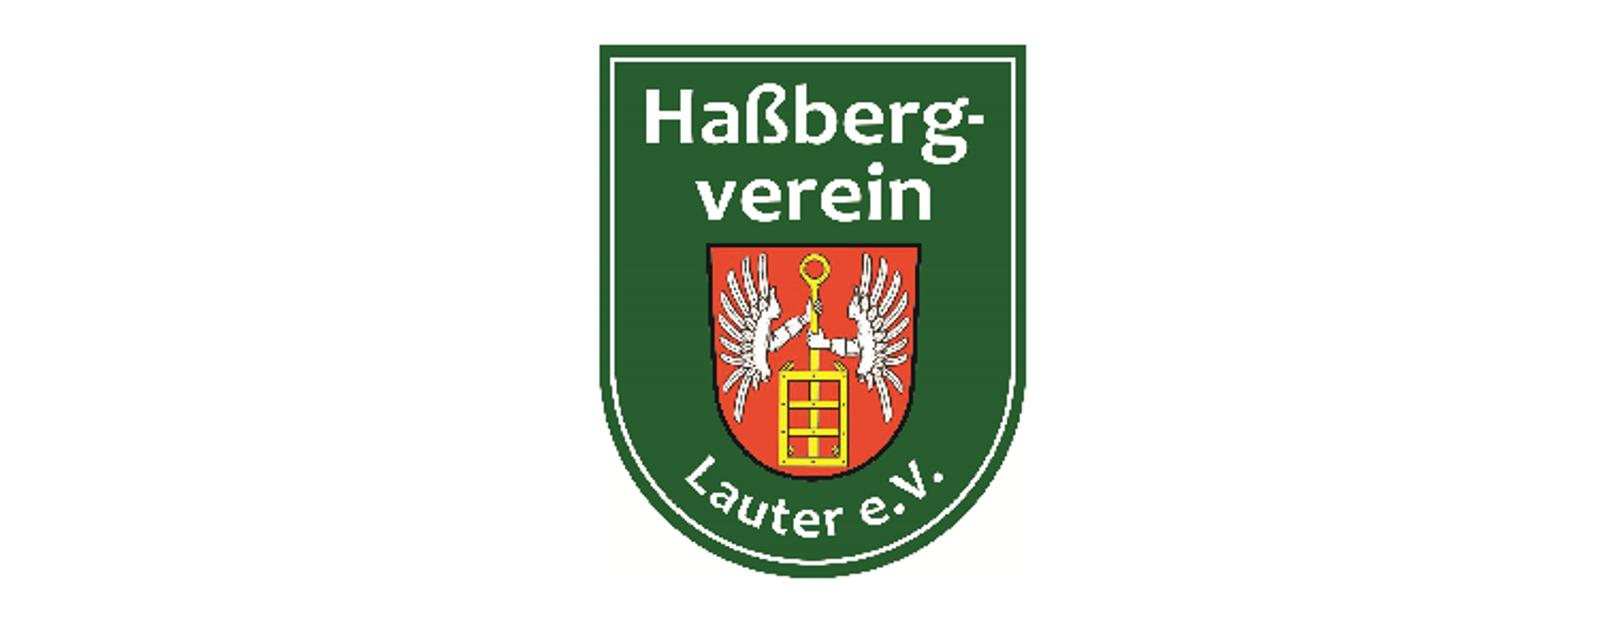 In der Vereins-Gemeinschaft das Verständnis für die Besonderheiten der Haßberge und die Verbundenheit zur heimischen Natur und Kultur zu fördern, sind Ziele des Haßbergvereins Lauter.